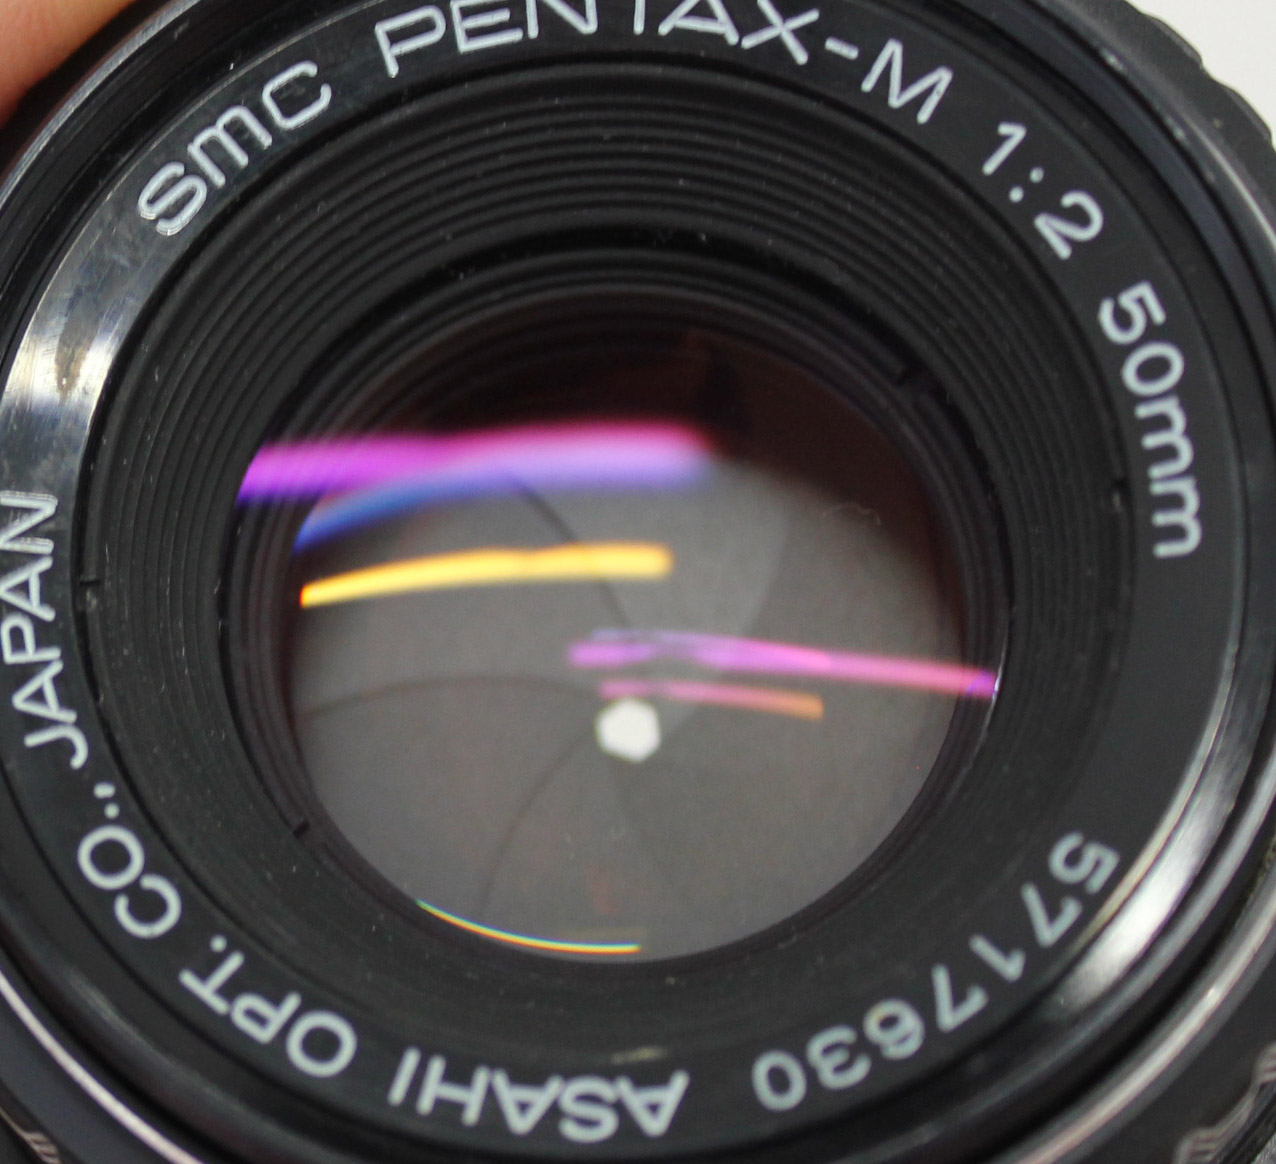 Pentax Mx Slr 35mm Film Camera With Smc Pentax M 50mm F 2 Lens From Japan C1729 Big Fish J Camera Big Fish J Shop